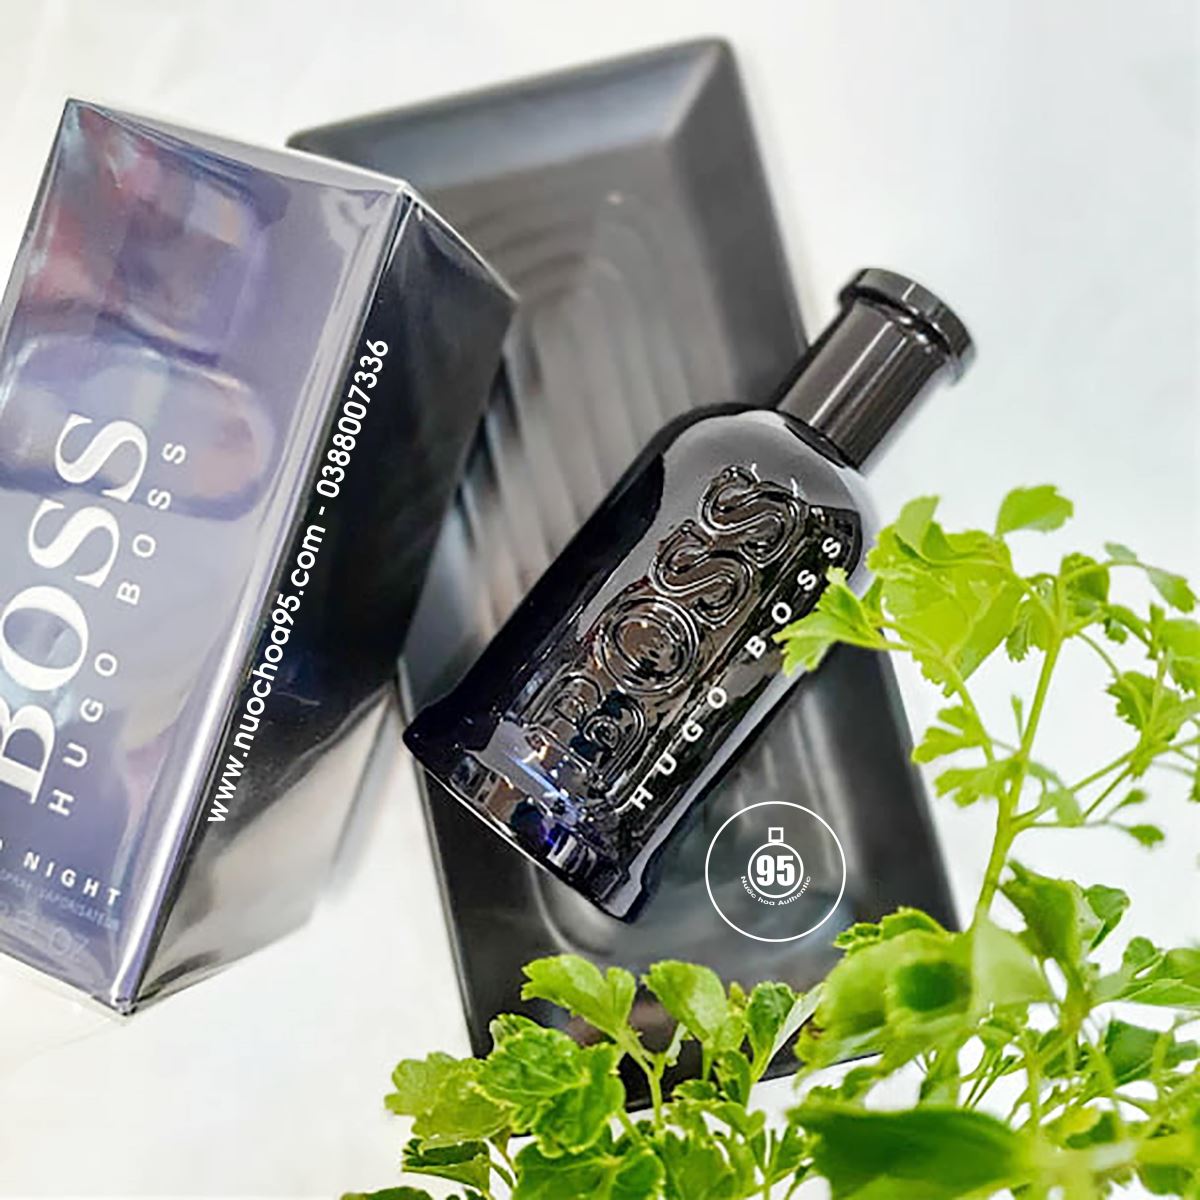 Nước hoa Hugo Boss Bottled Night  - Ảnh 1